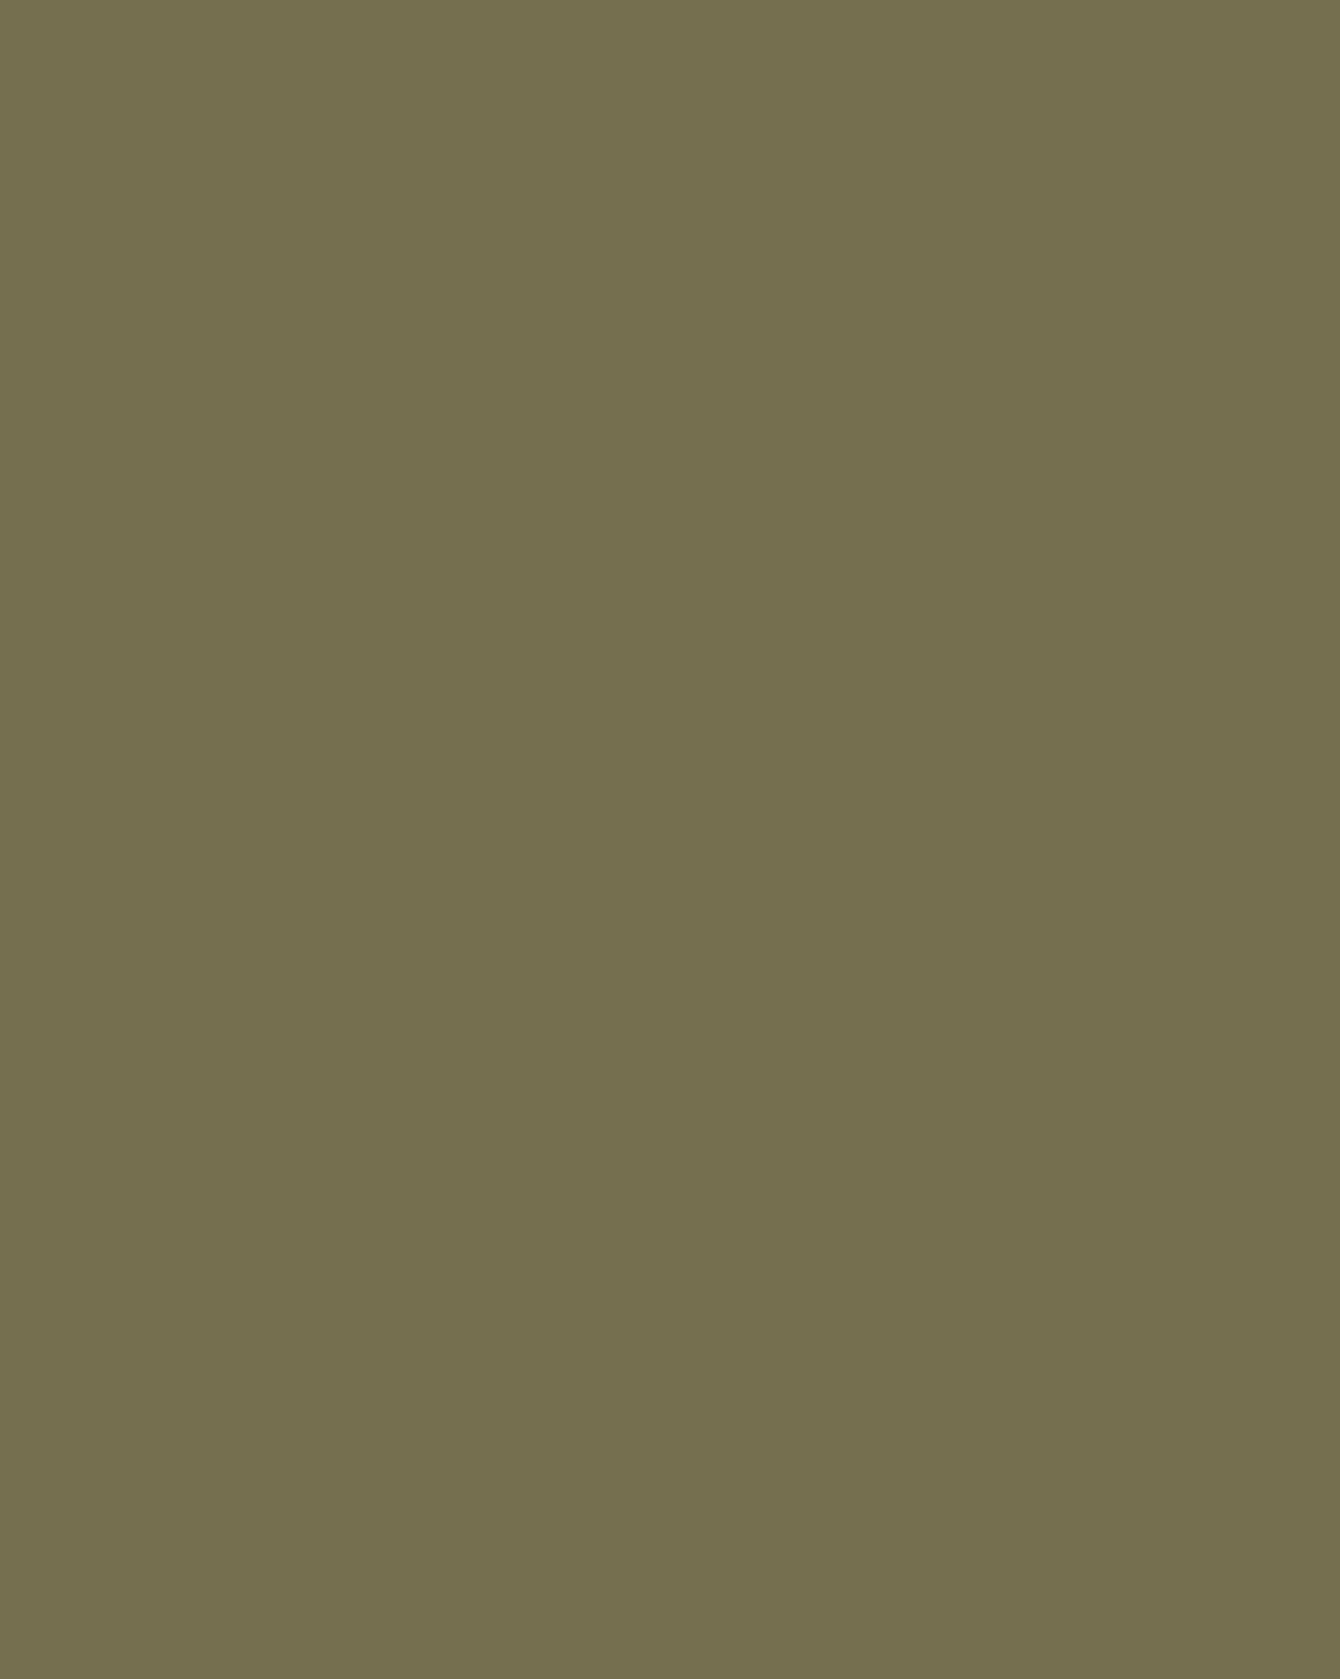 Илья Репин. Осенний букет (фрагмент). 1892. Государственная Третьяковская галерея, Москва